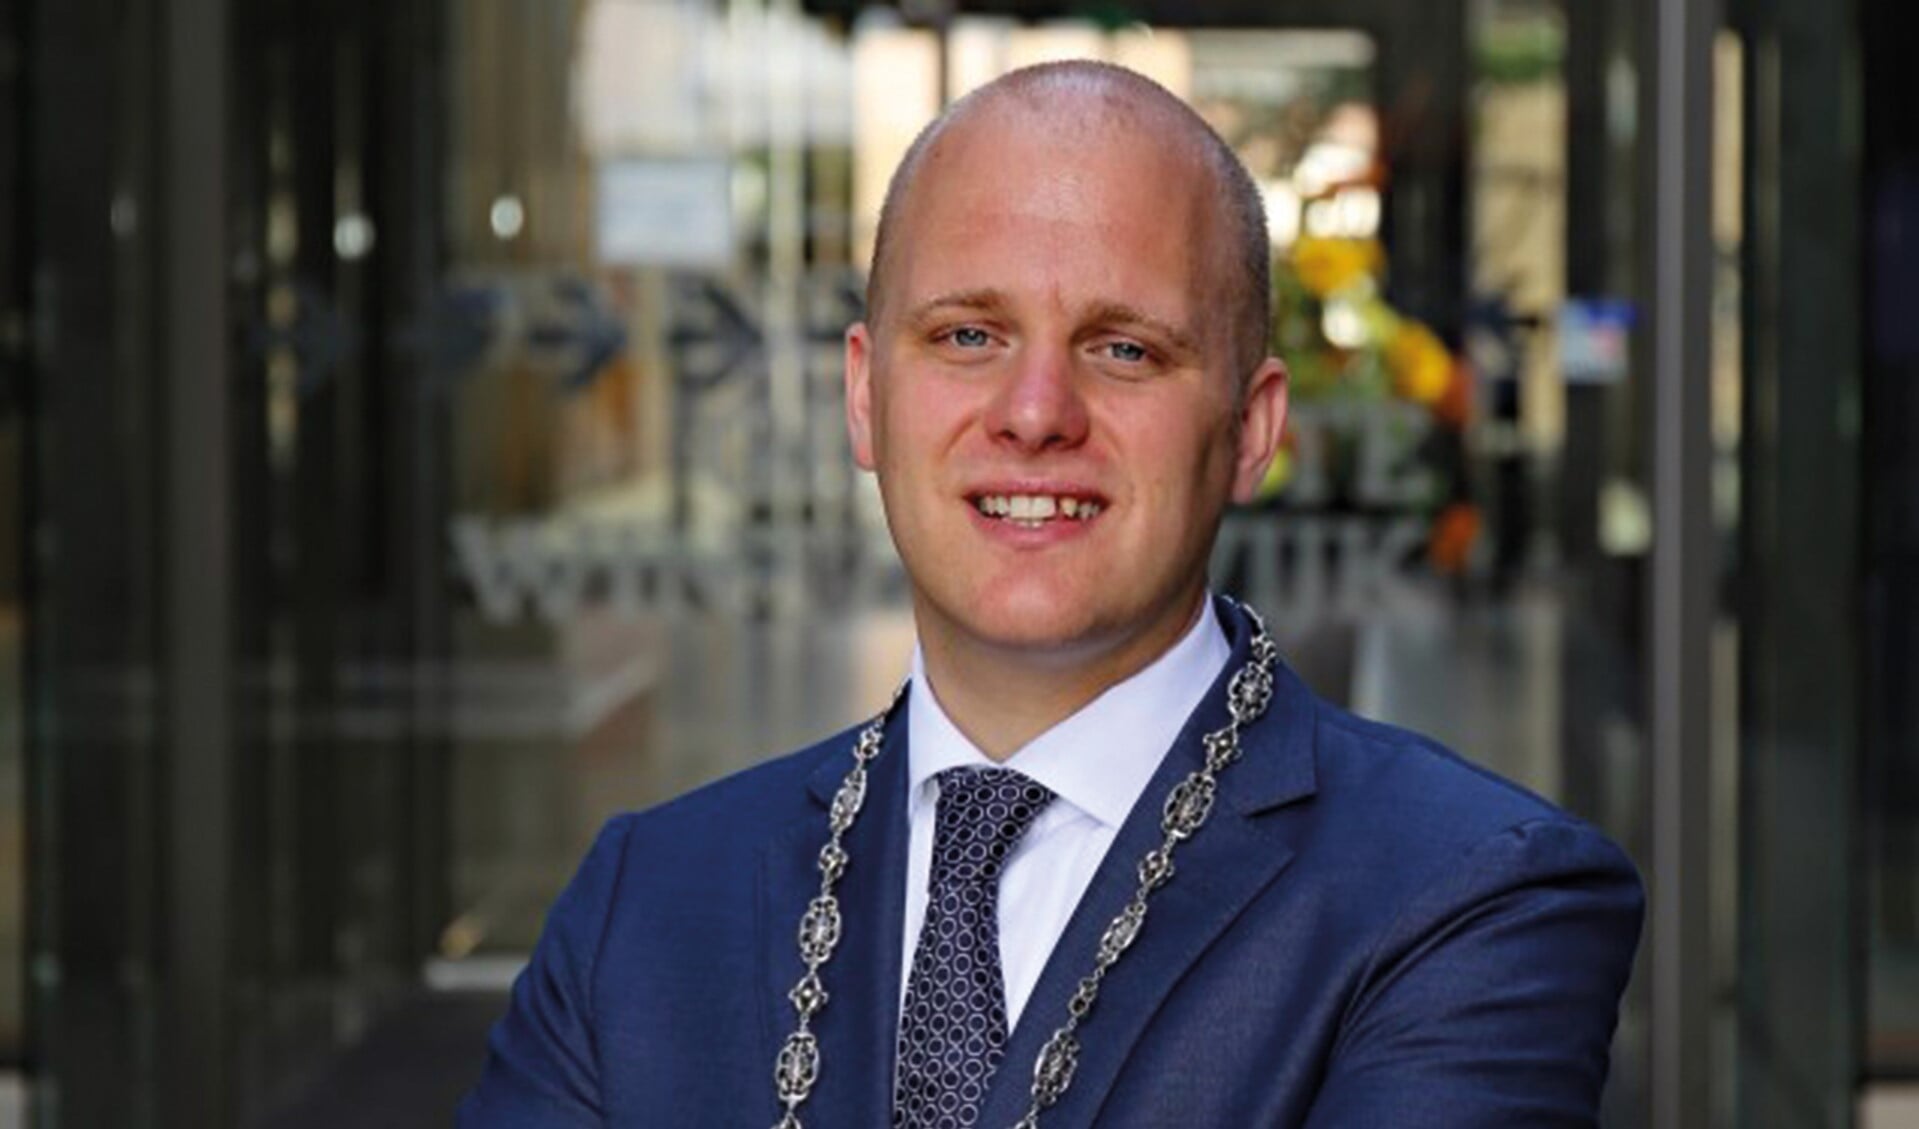 Burgemeester Bengevoord van de gemeente Winterswijk. Foto: gemeente Winterswijk